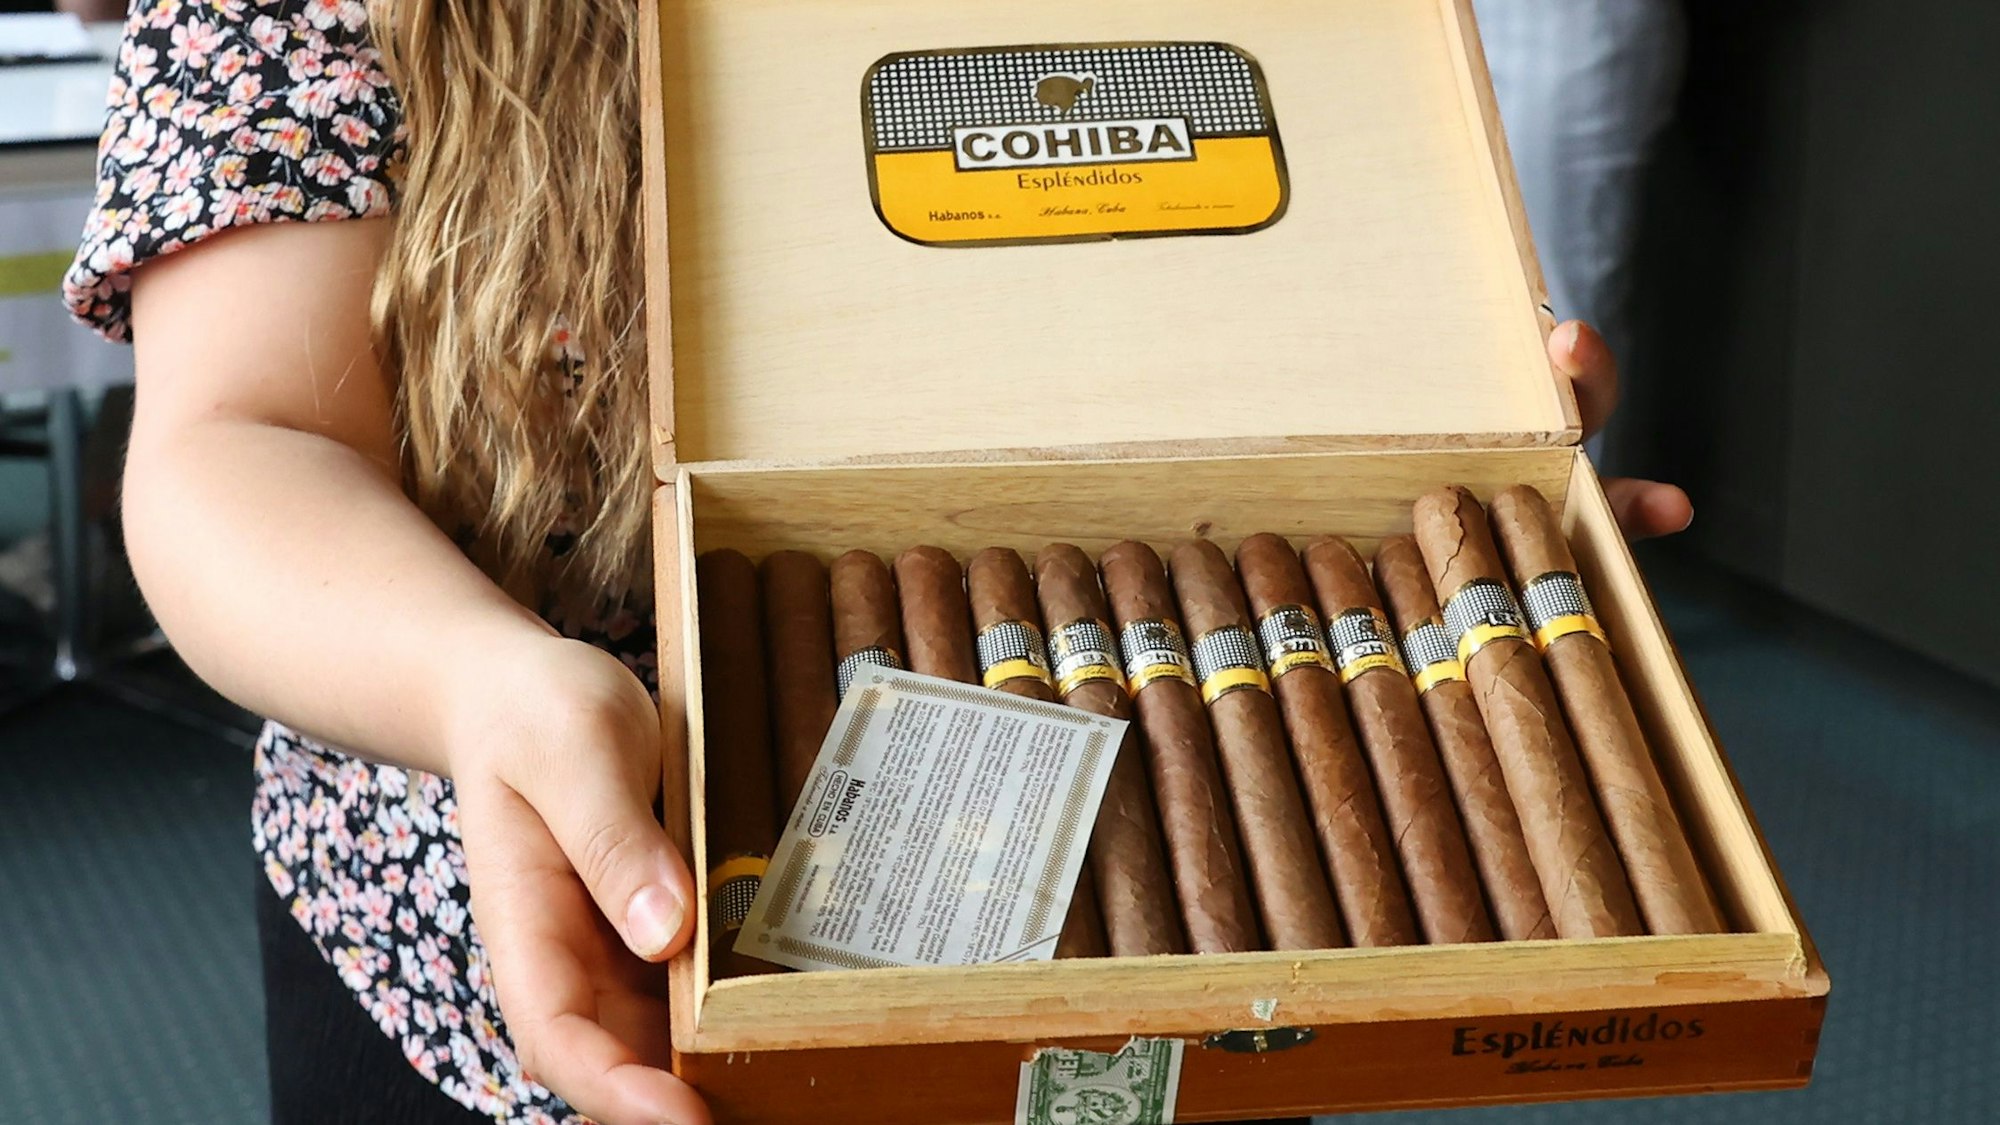 Die angebotenen Cohiba Zigarren